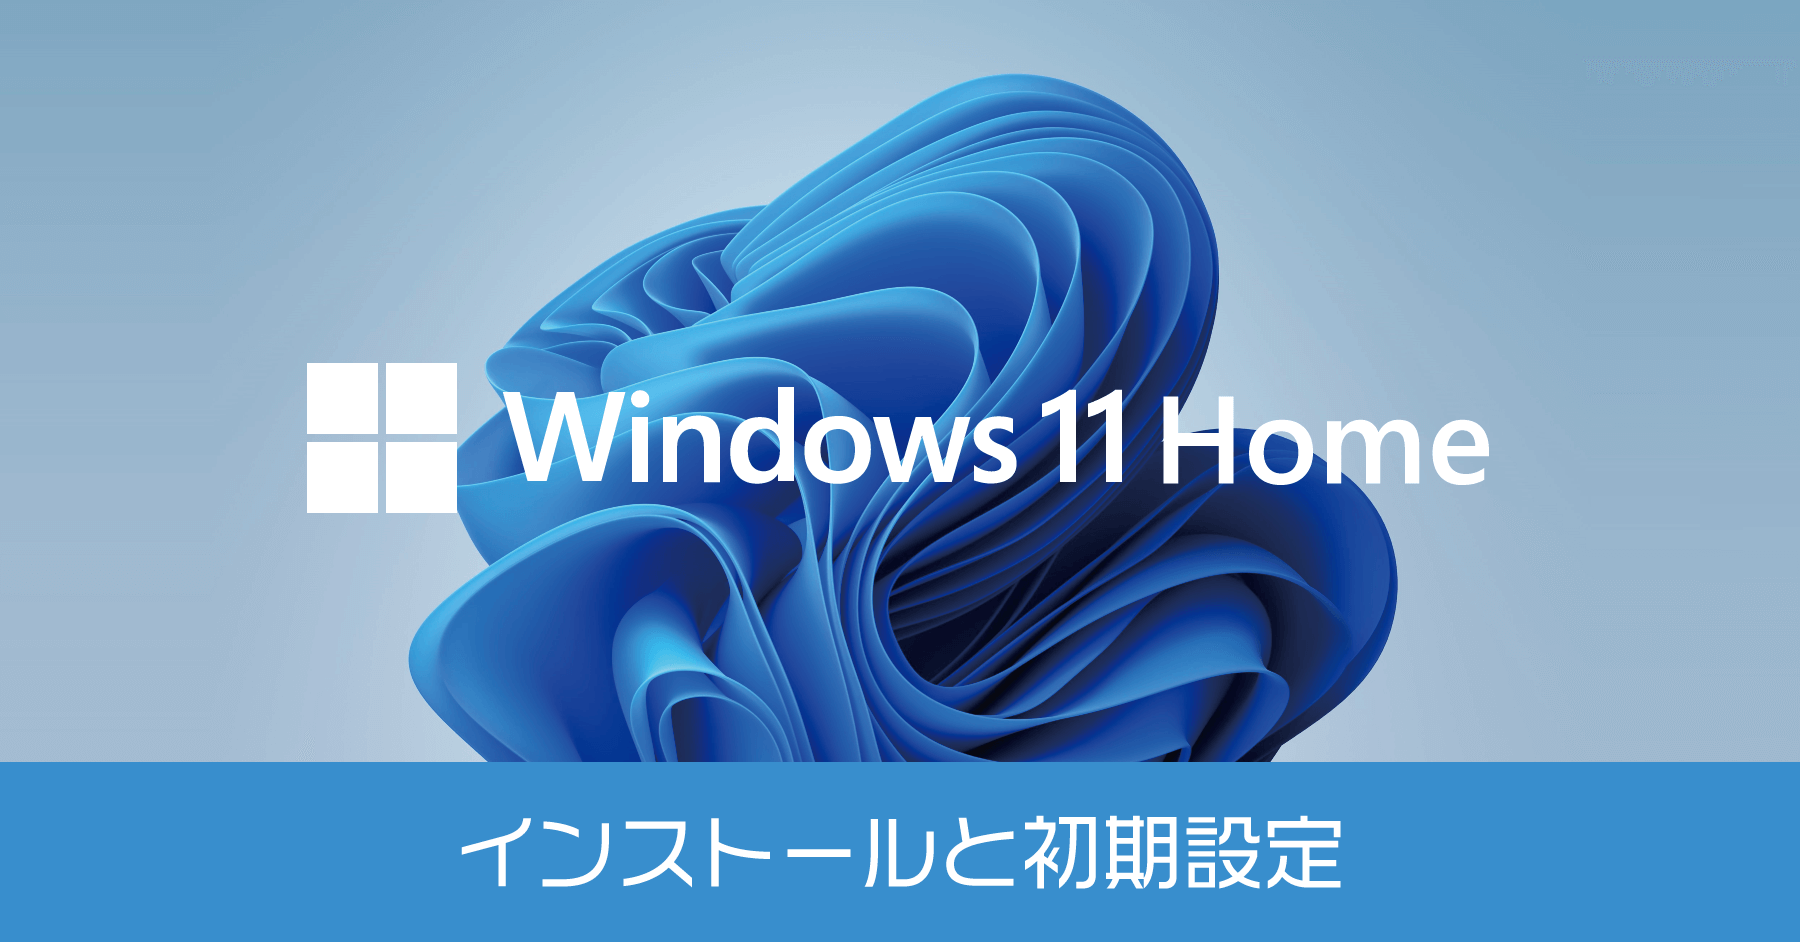 自作PC】Windows 11 Home のインストールと初期設定の方法【初心者にもわかりやすく解説】